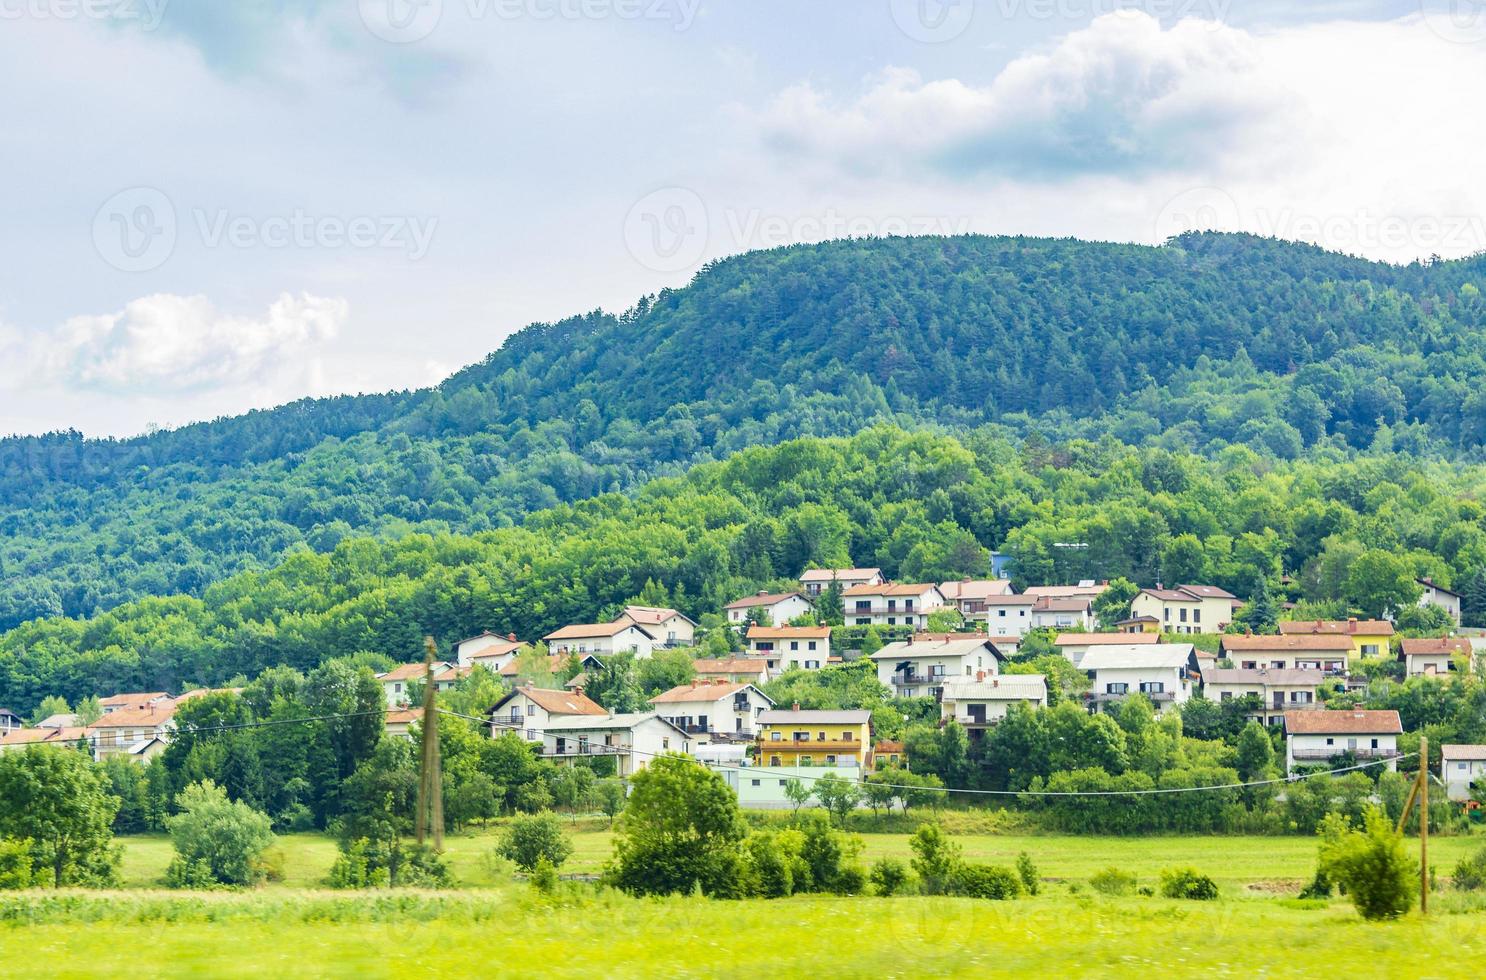 wunderschöne berg- und waldlandschaft mit idyllischem dorf in slowenien. foto